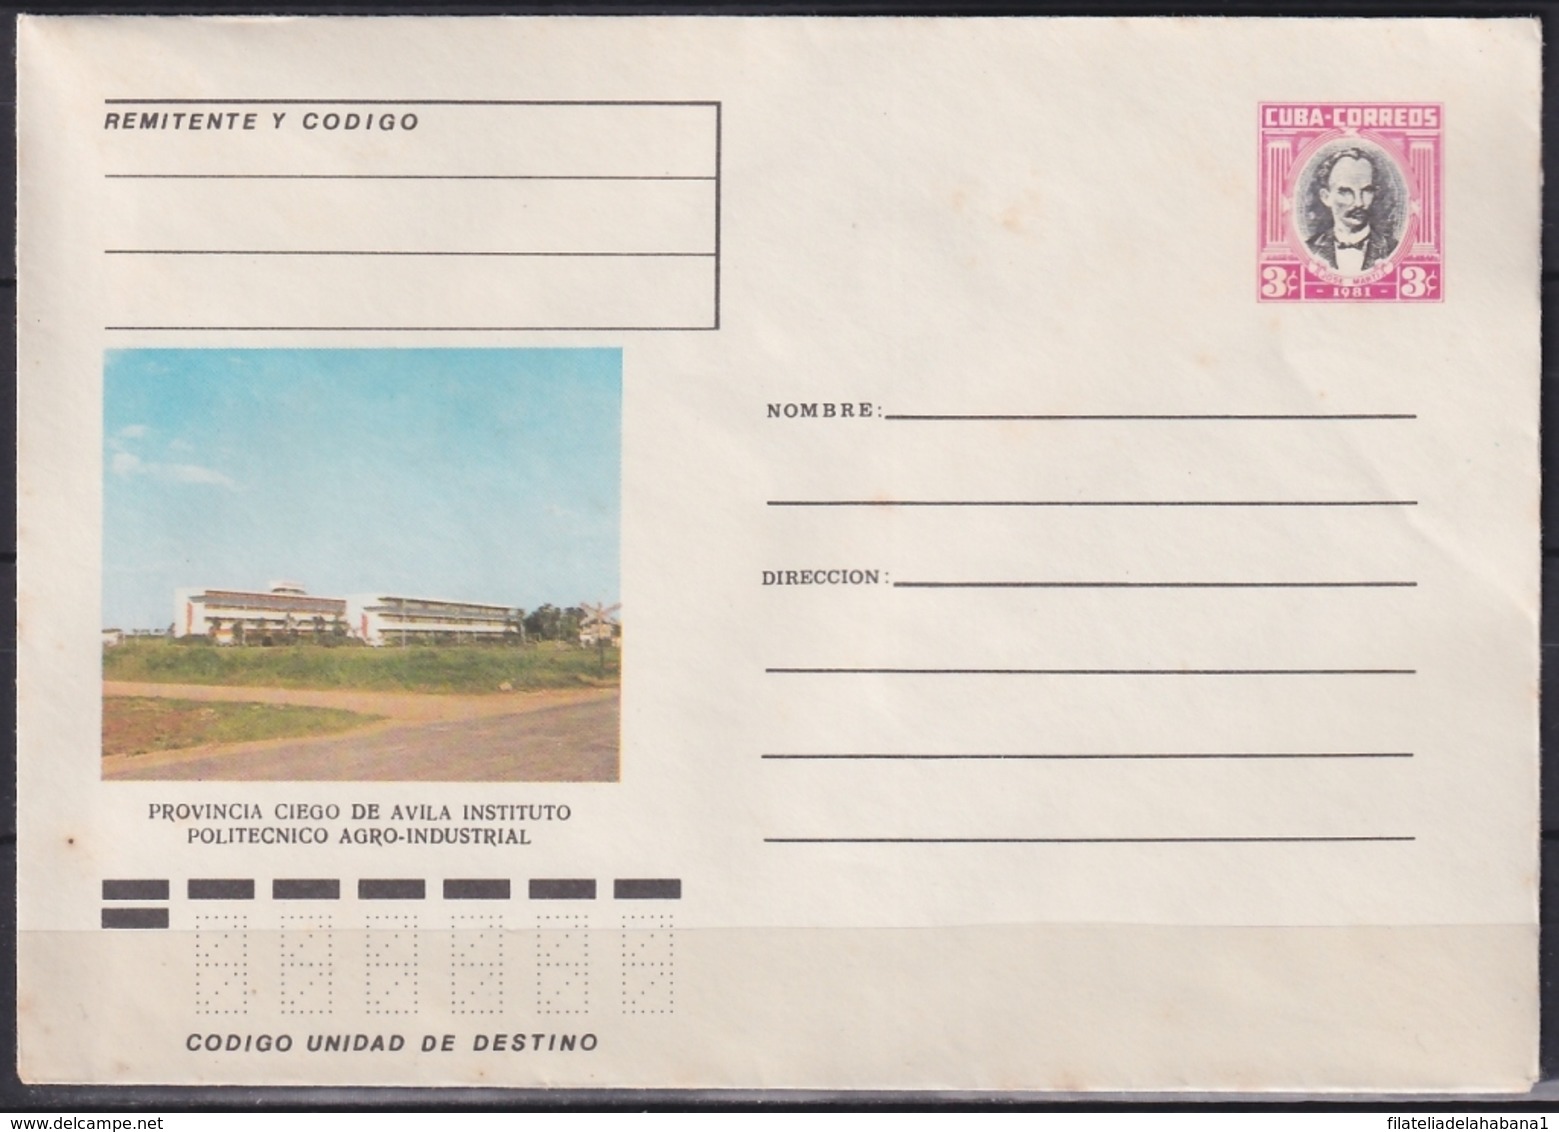 1981-EP-136 CUBA 1981 3c POSTAL STATIONERY COVER. CIEGO DE AVILA, INSTITUTO POLITECNICO AGRO-INDUSTRIAL - Briefe U. Dokumente